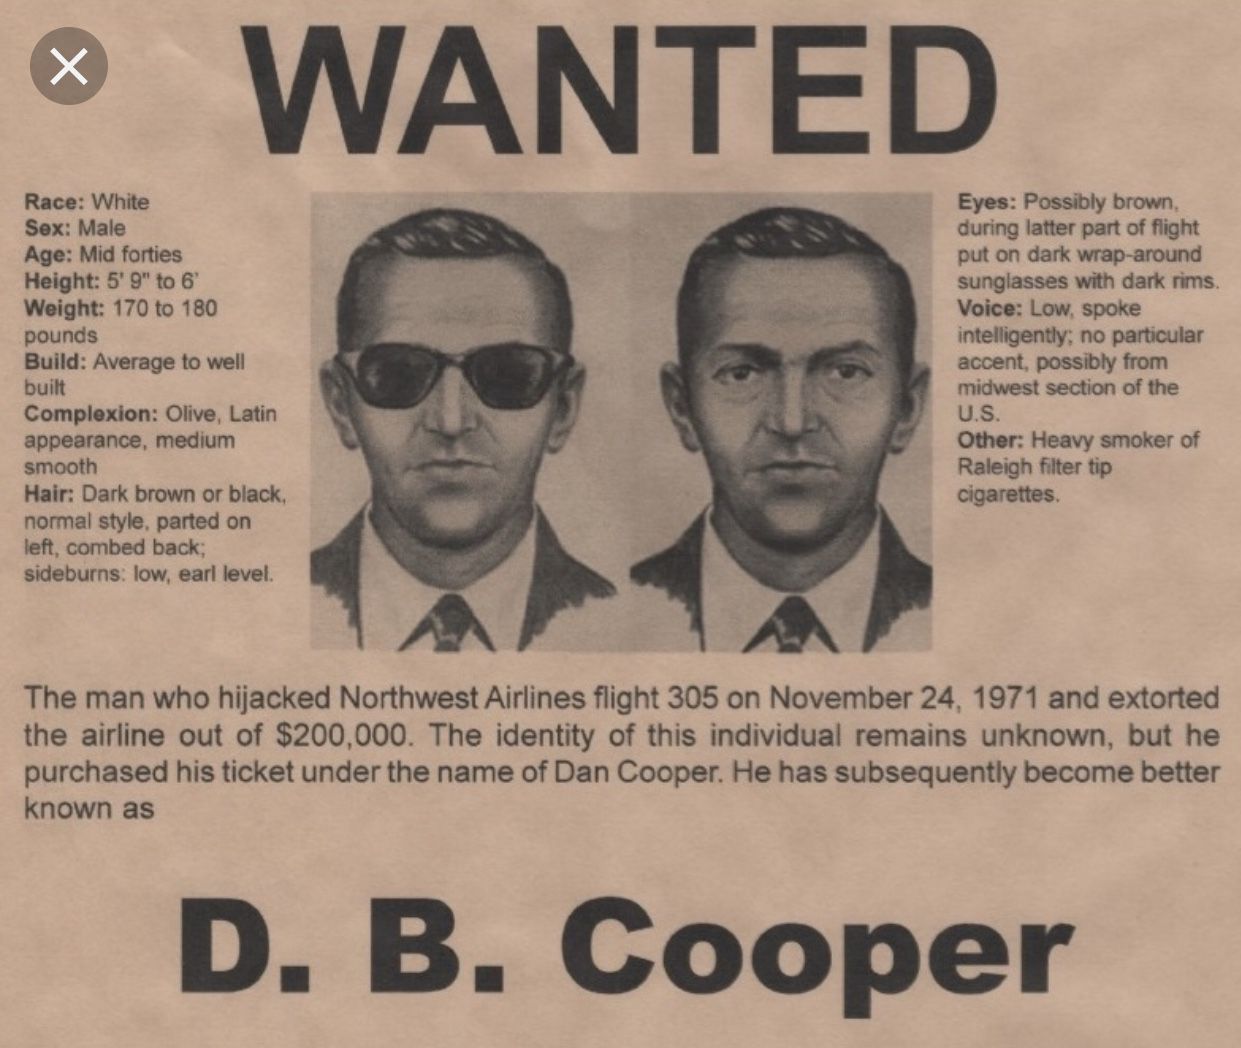 d.b cooper